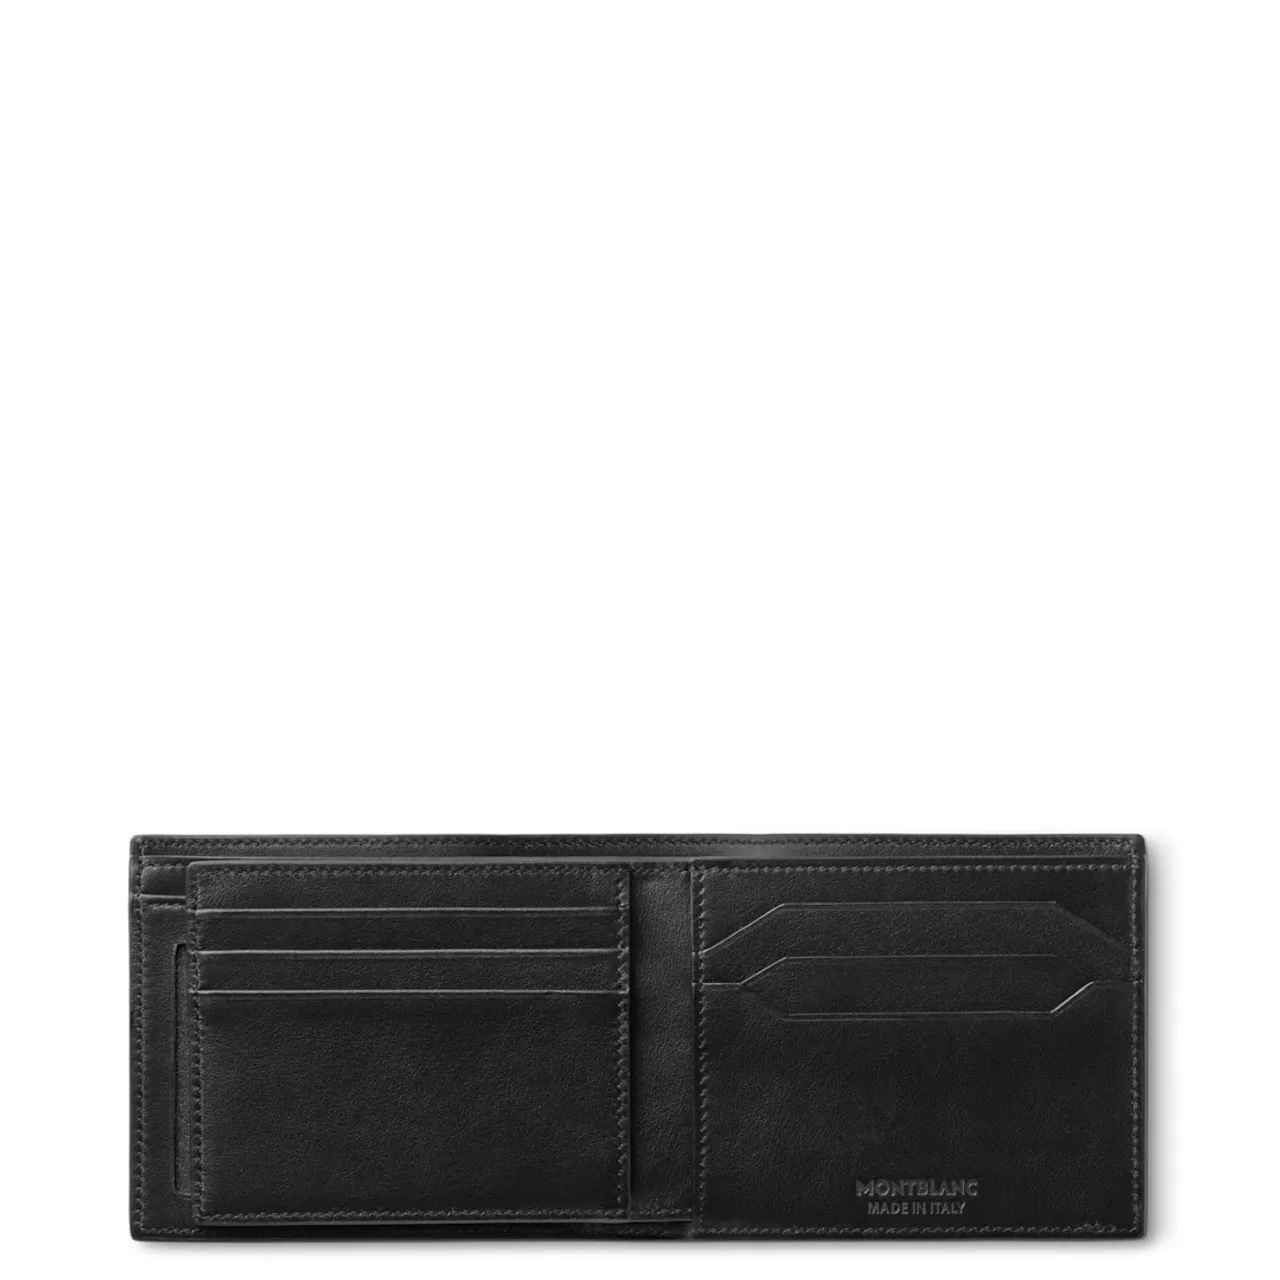 Montblanc Meisterstück 4810 Brieftasche 6 cc mit 2 Sichtfächern Schwarz